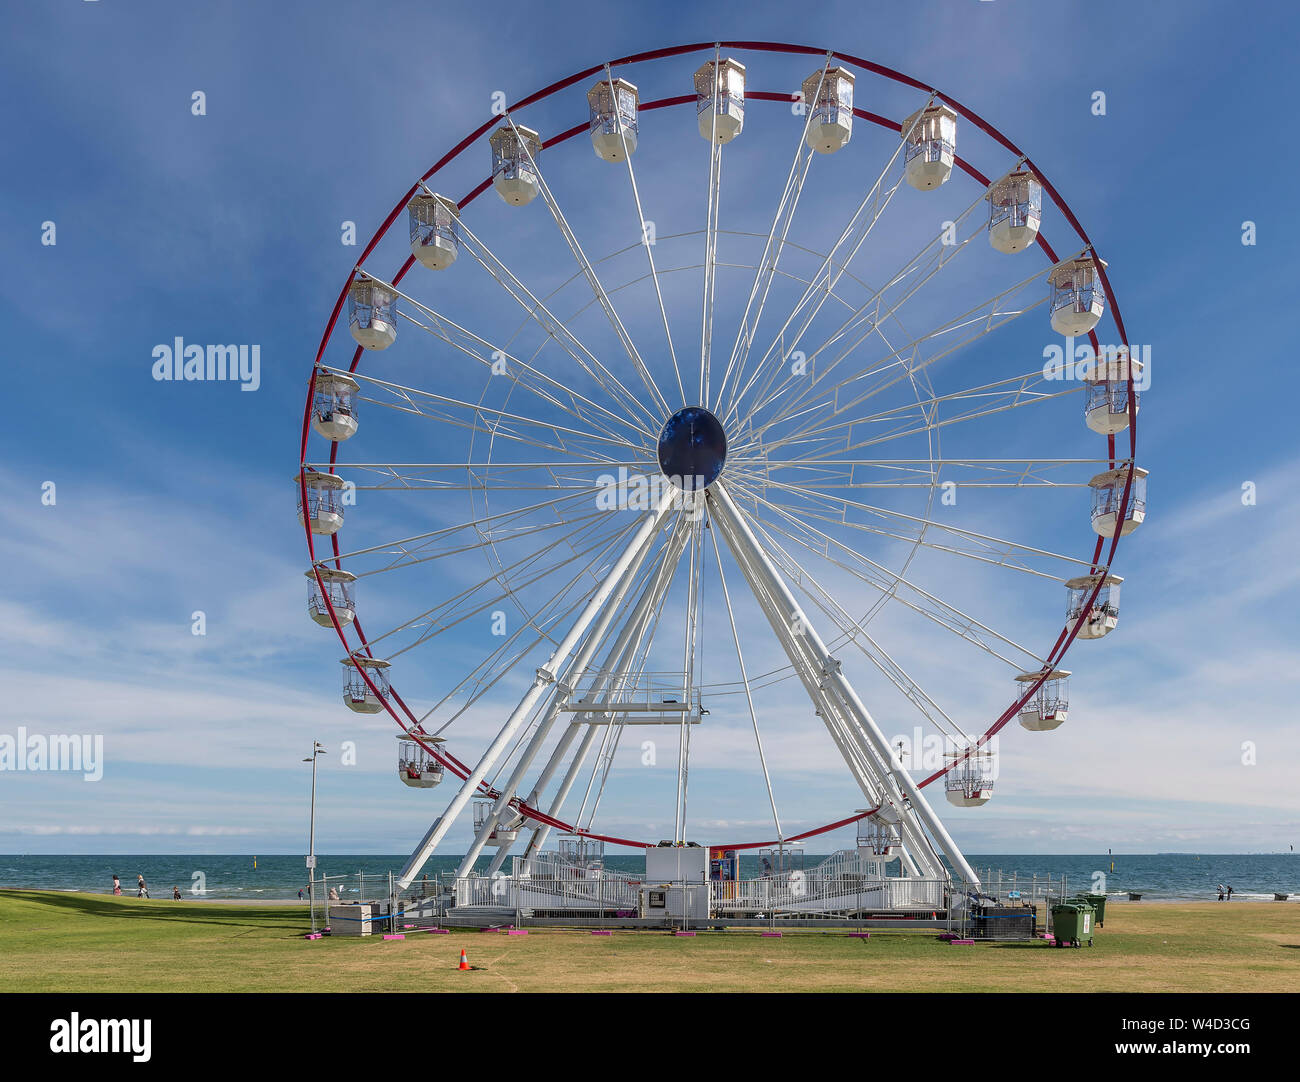 Bellissima vista del St Kilda ruota panoramica Ferris in una giornata di sole con alcune nuvole, Melbourne, Australia Foto Stock